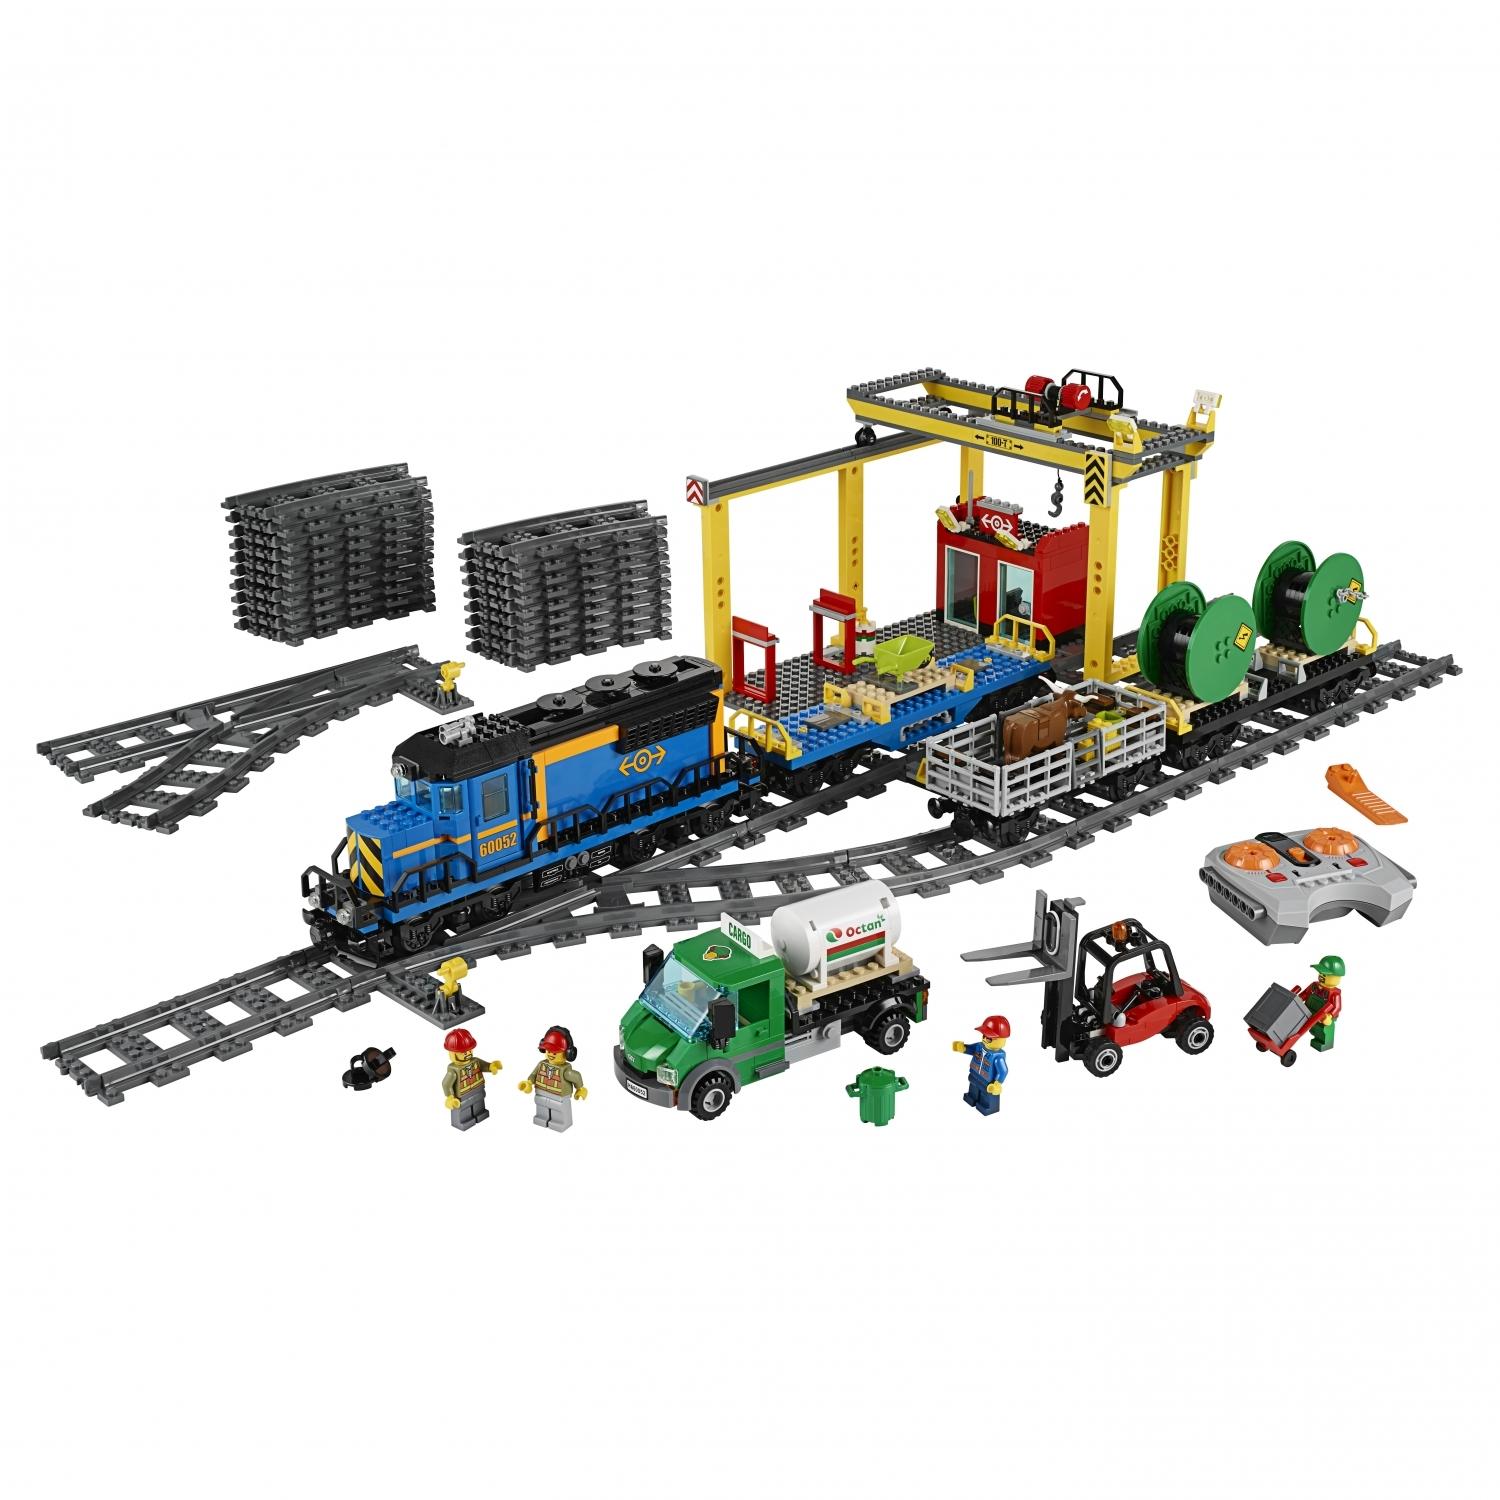 Lego City 60052 Грузовой поезд